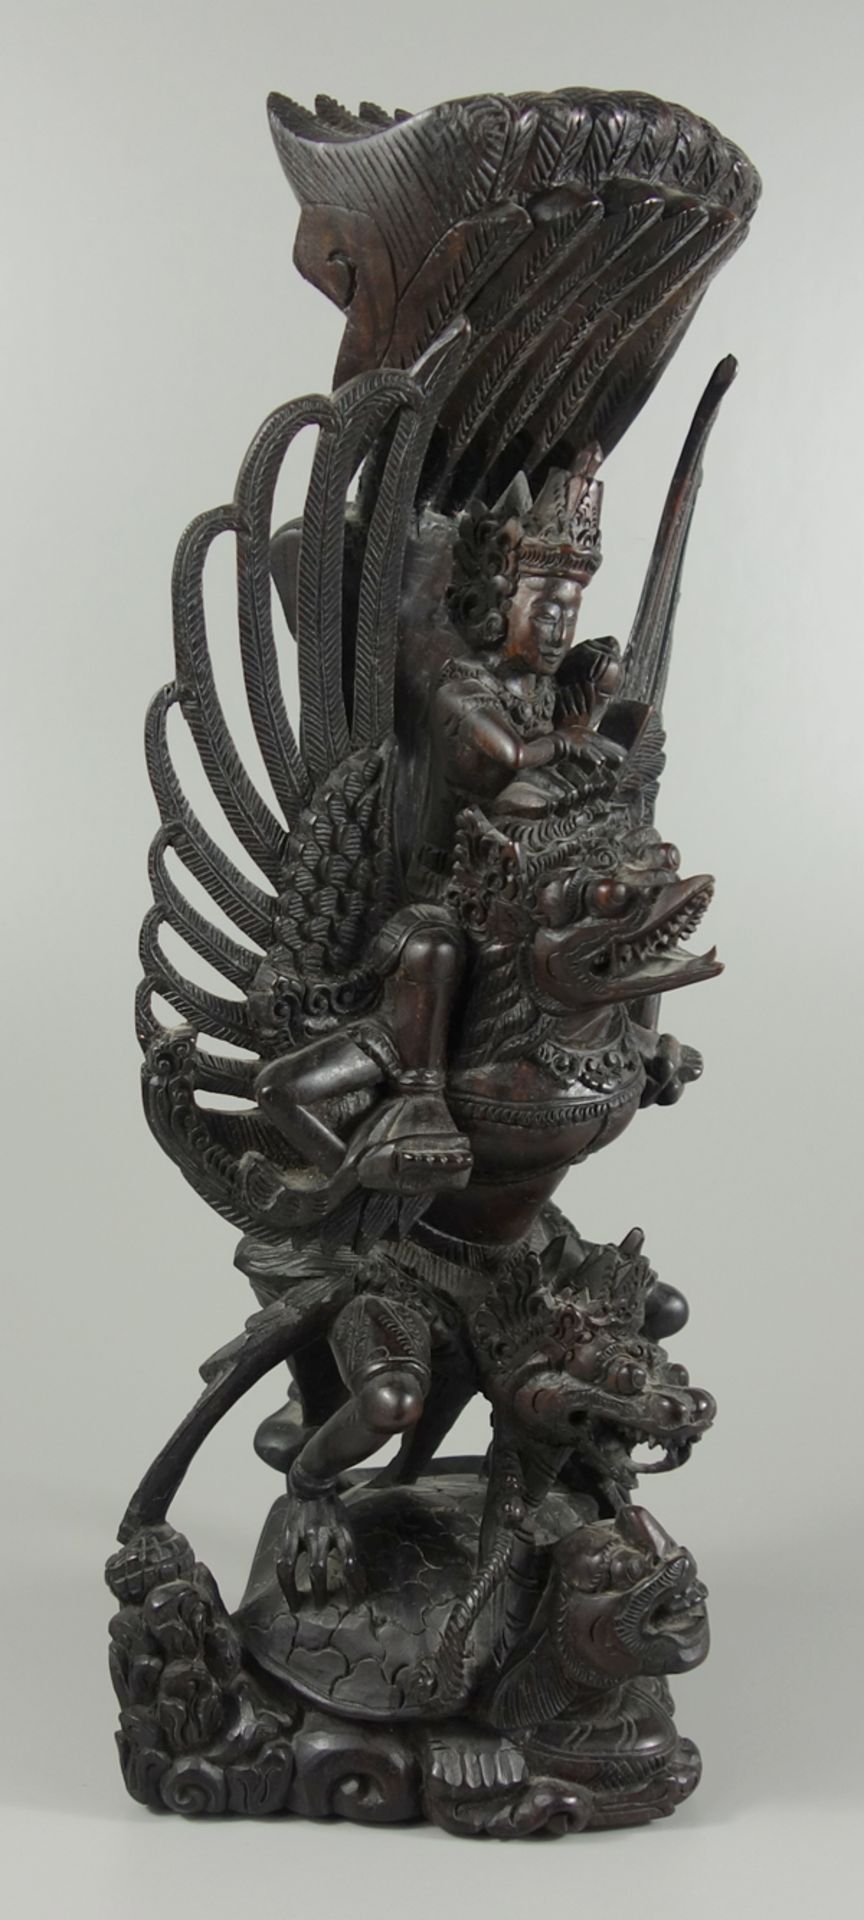 Vishnu auf Garuda, Bali, Indonesien, Hartholz, aufwendig geschnitzt, H.36cm, ein Flügel geklebt - Bild 2 aus 3